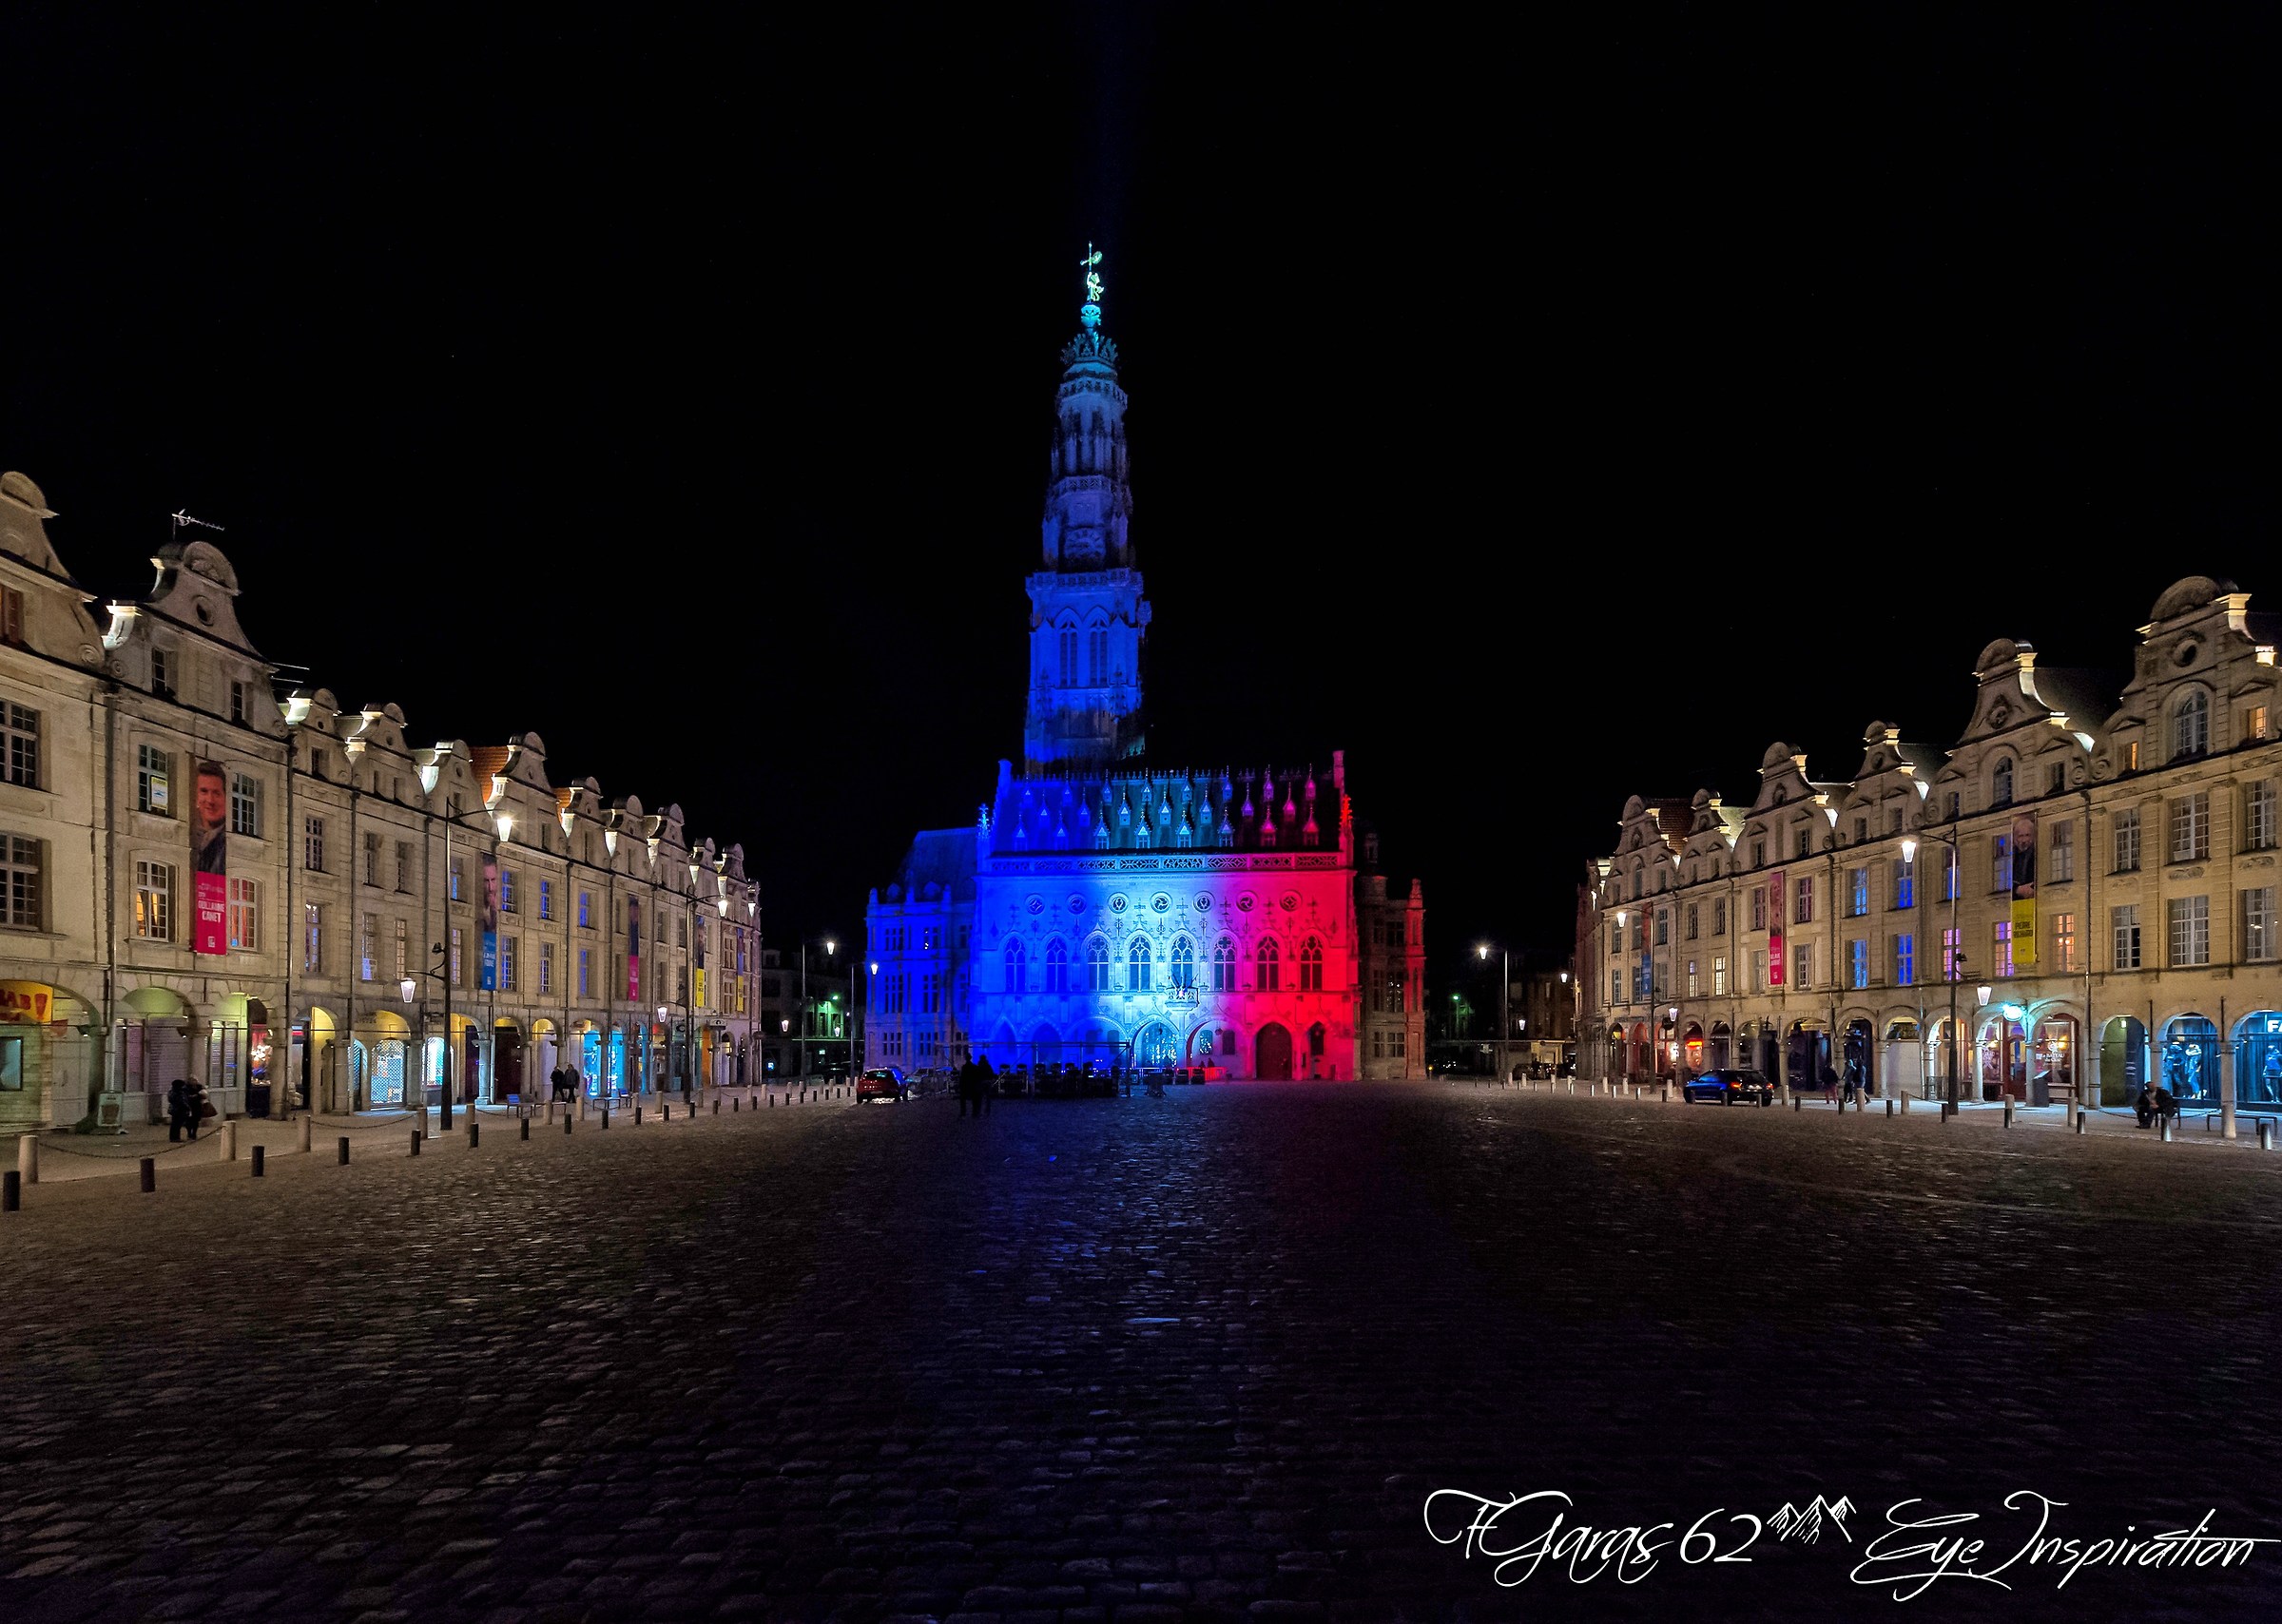 Arras rend hommage aux victimes des attentats de paris...